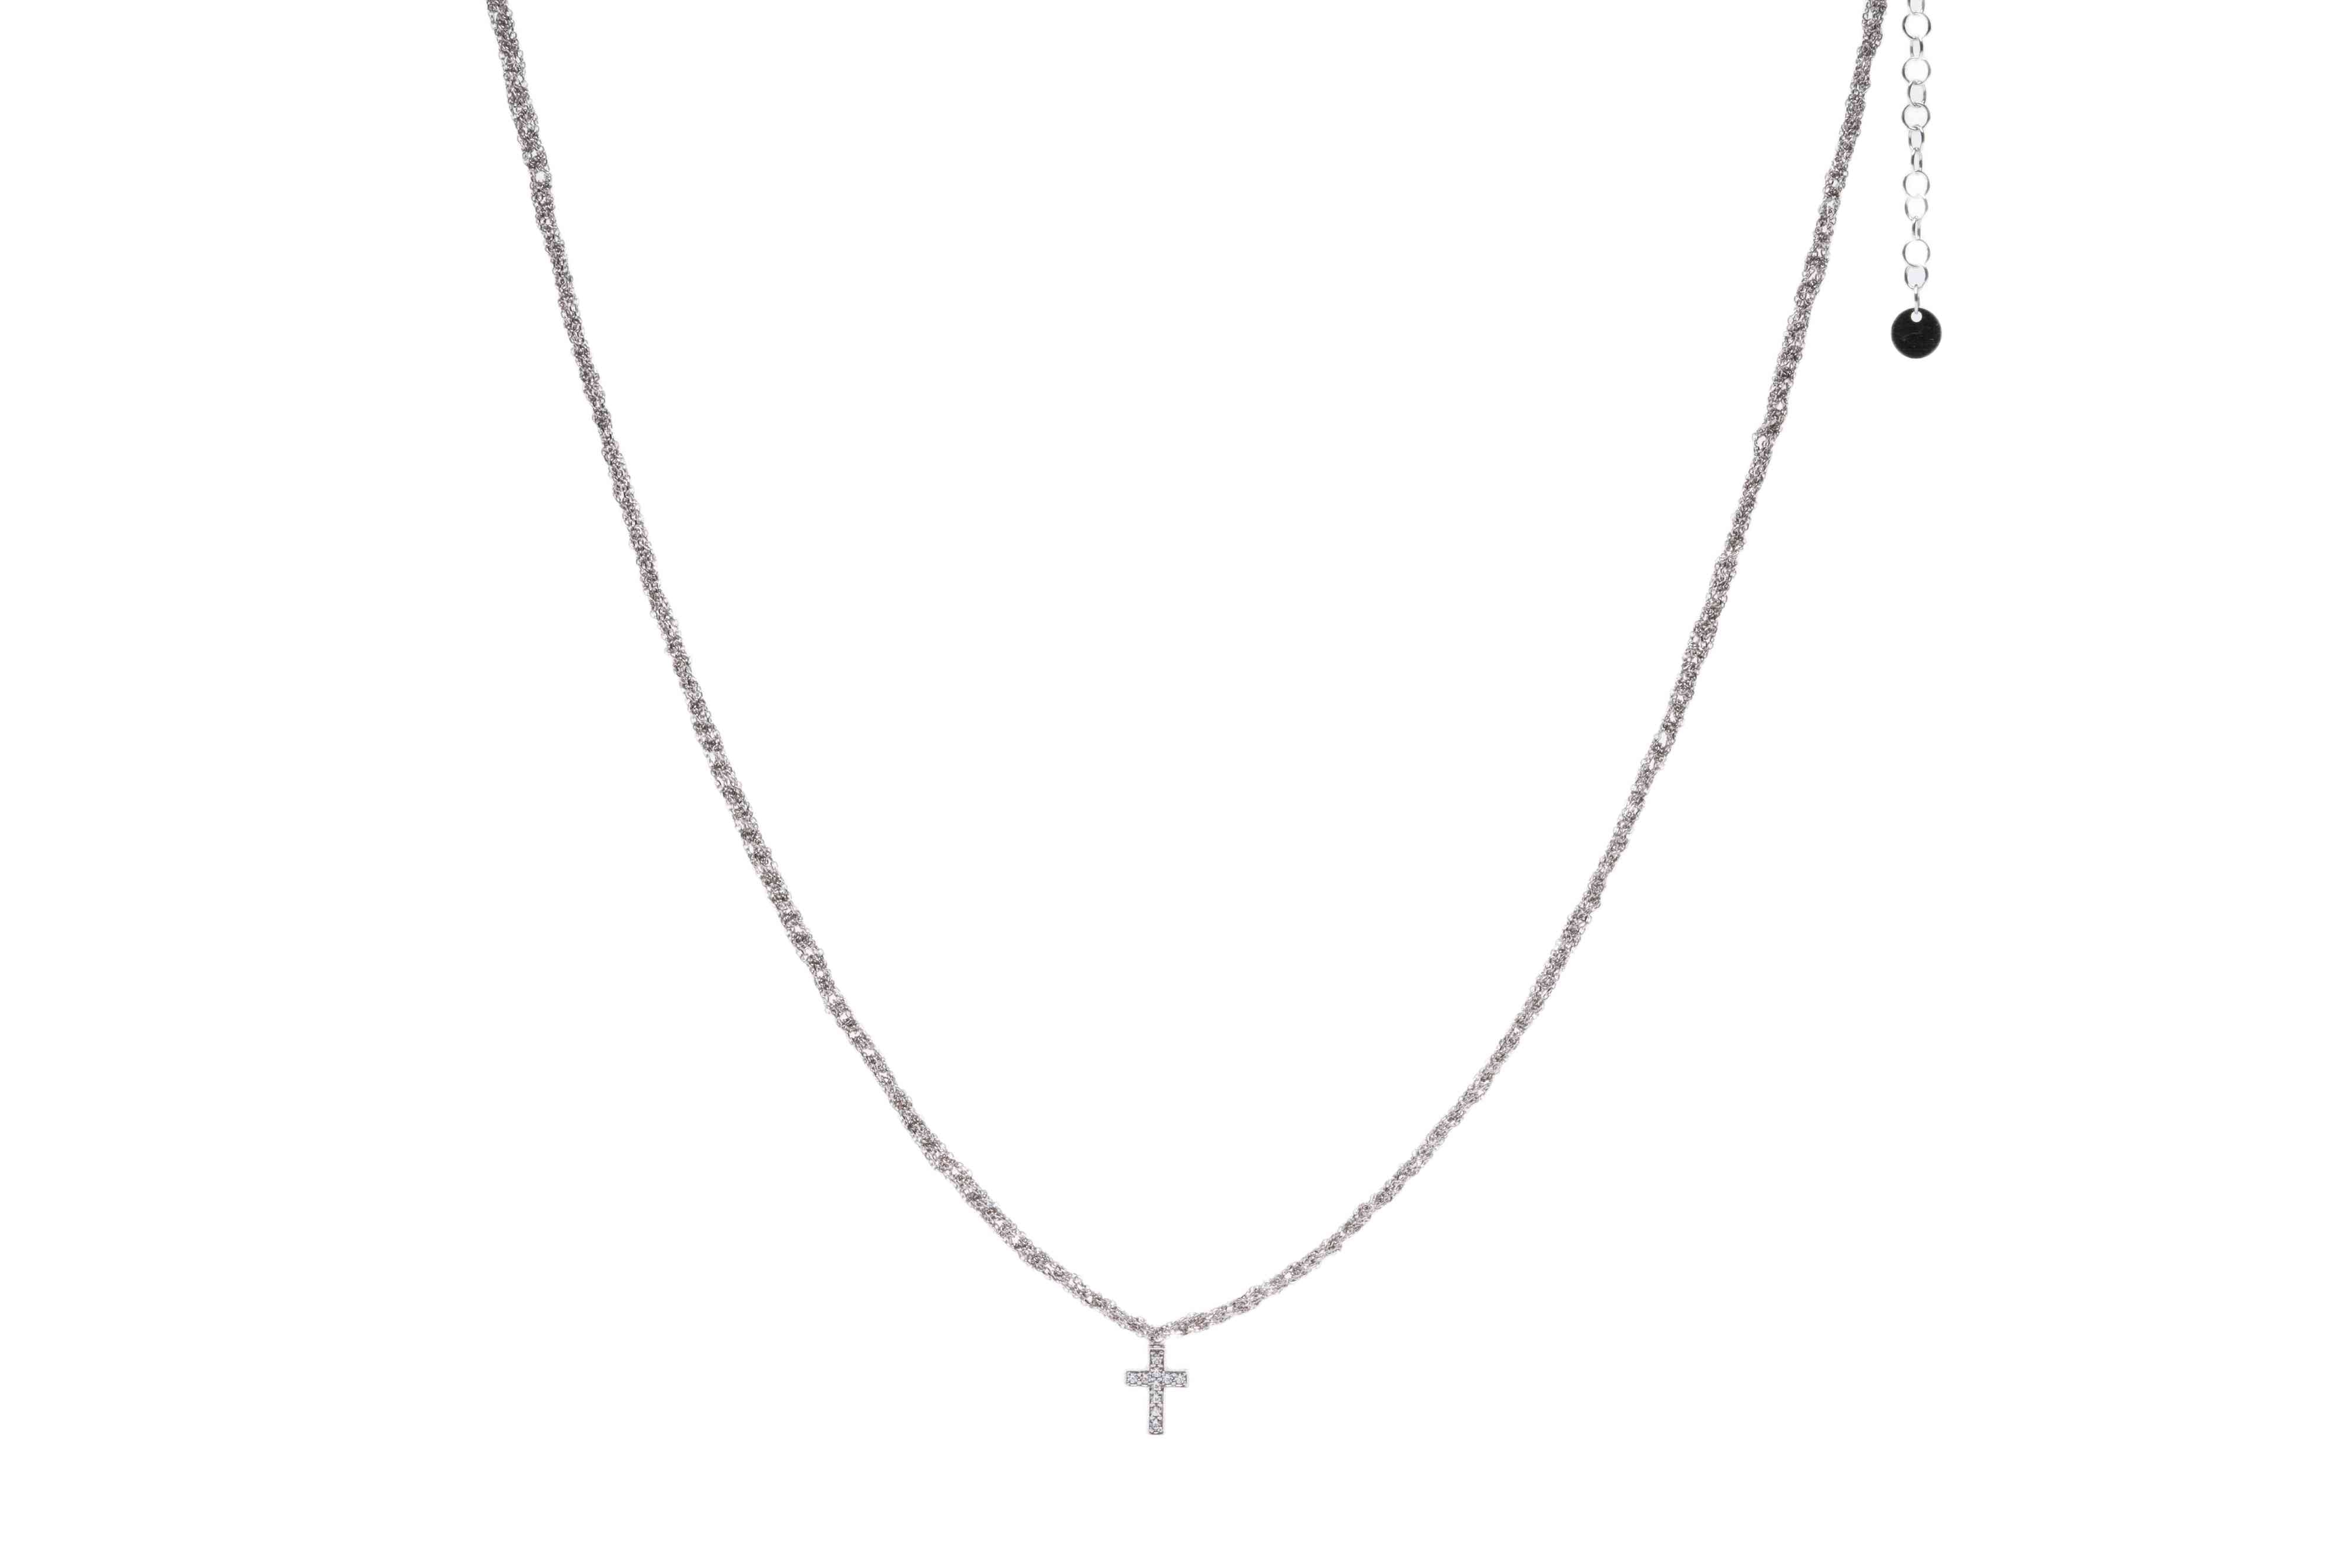 Collana-uncinetto-croce-con-zirconi-Argentofilato-in-argento-925